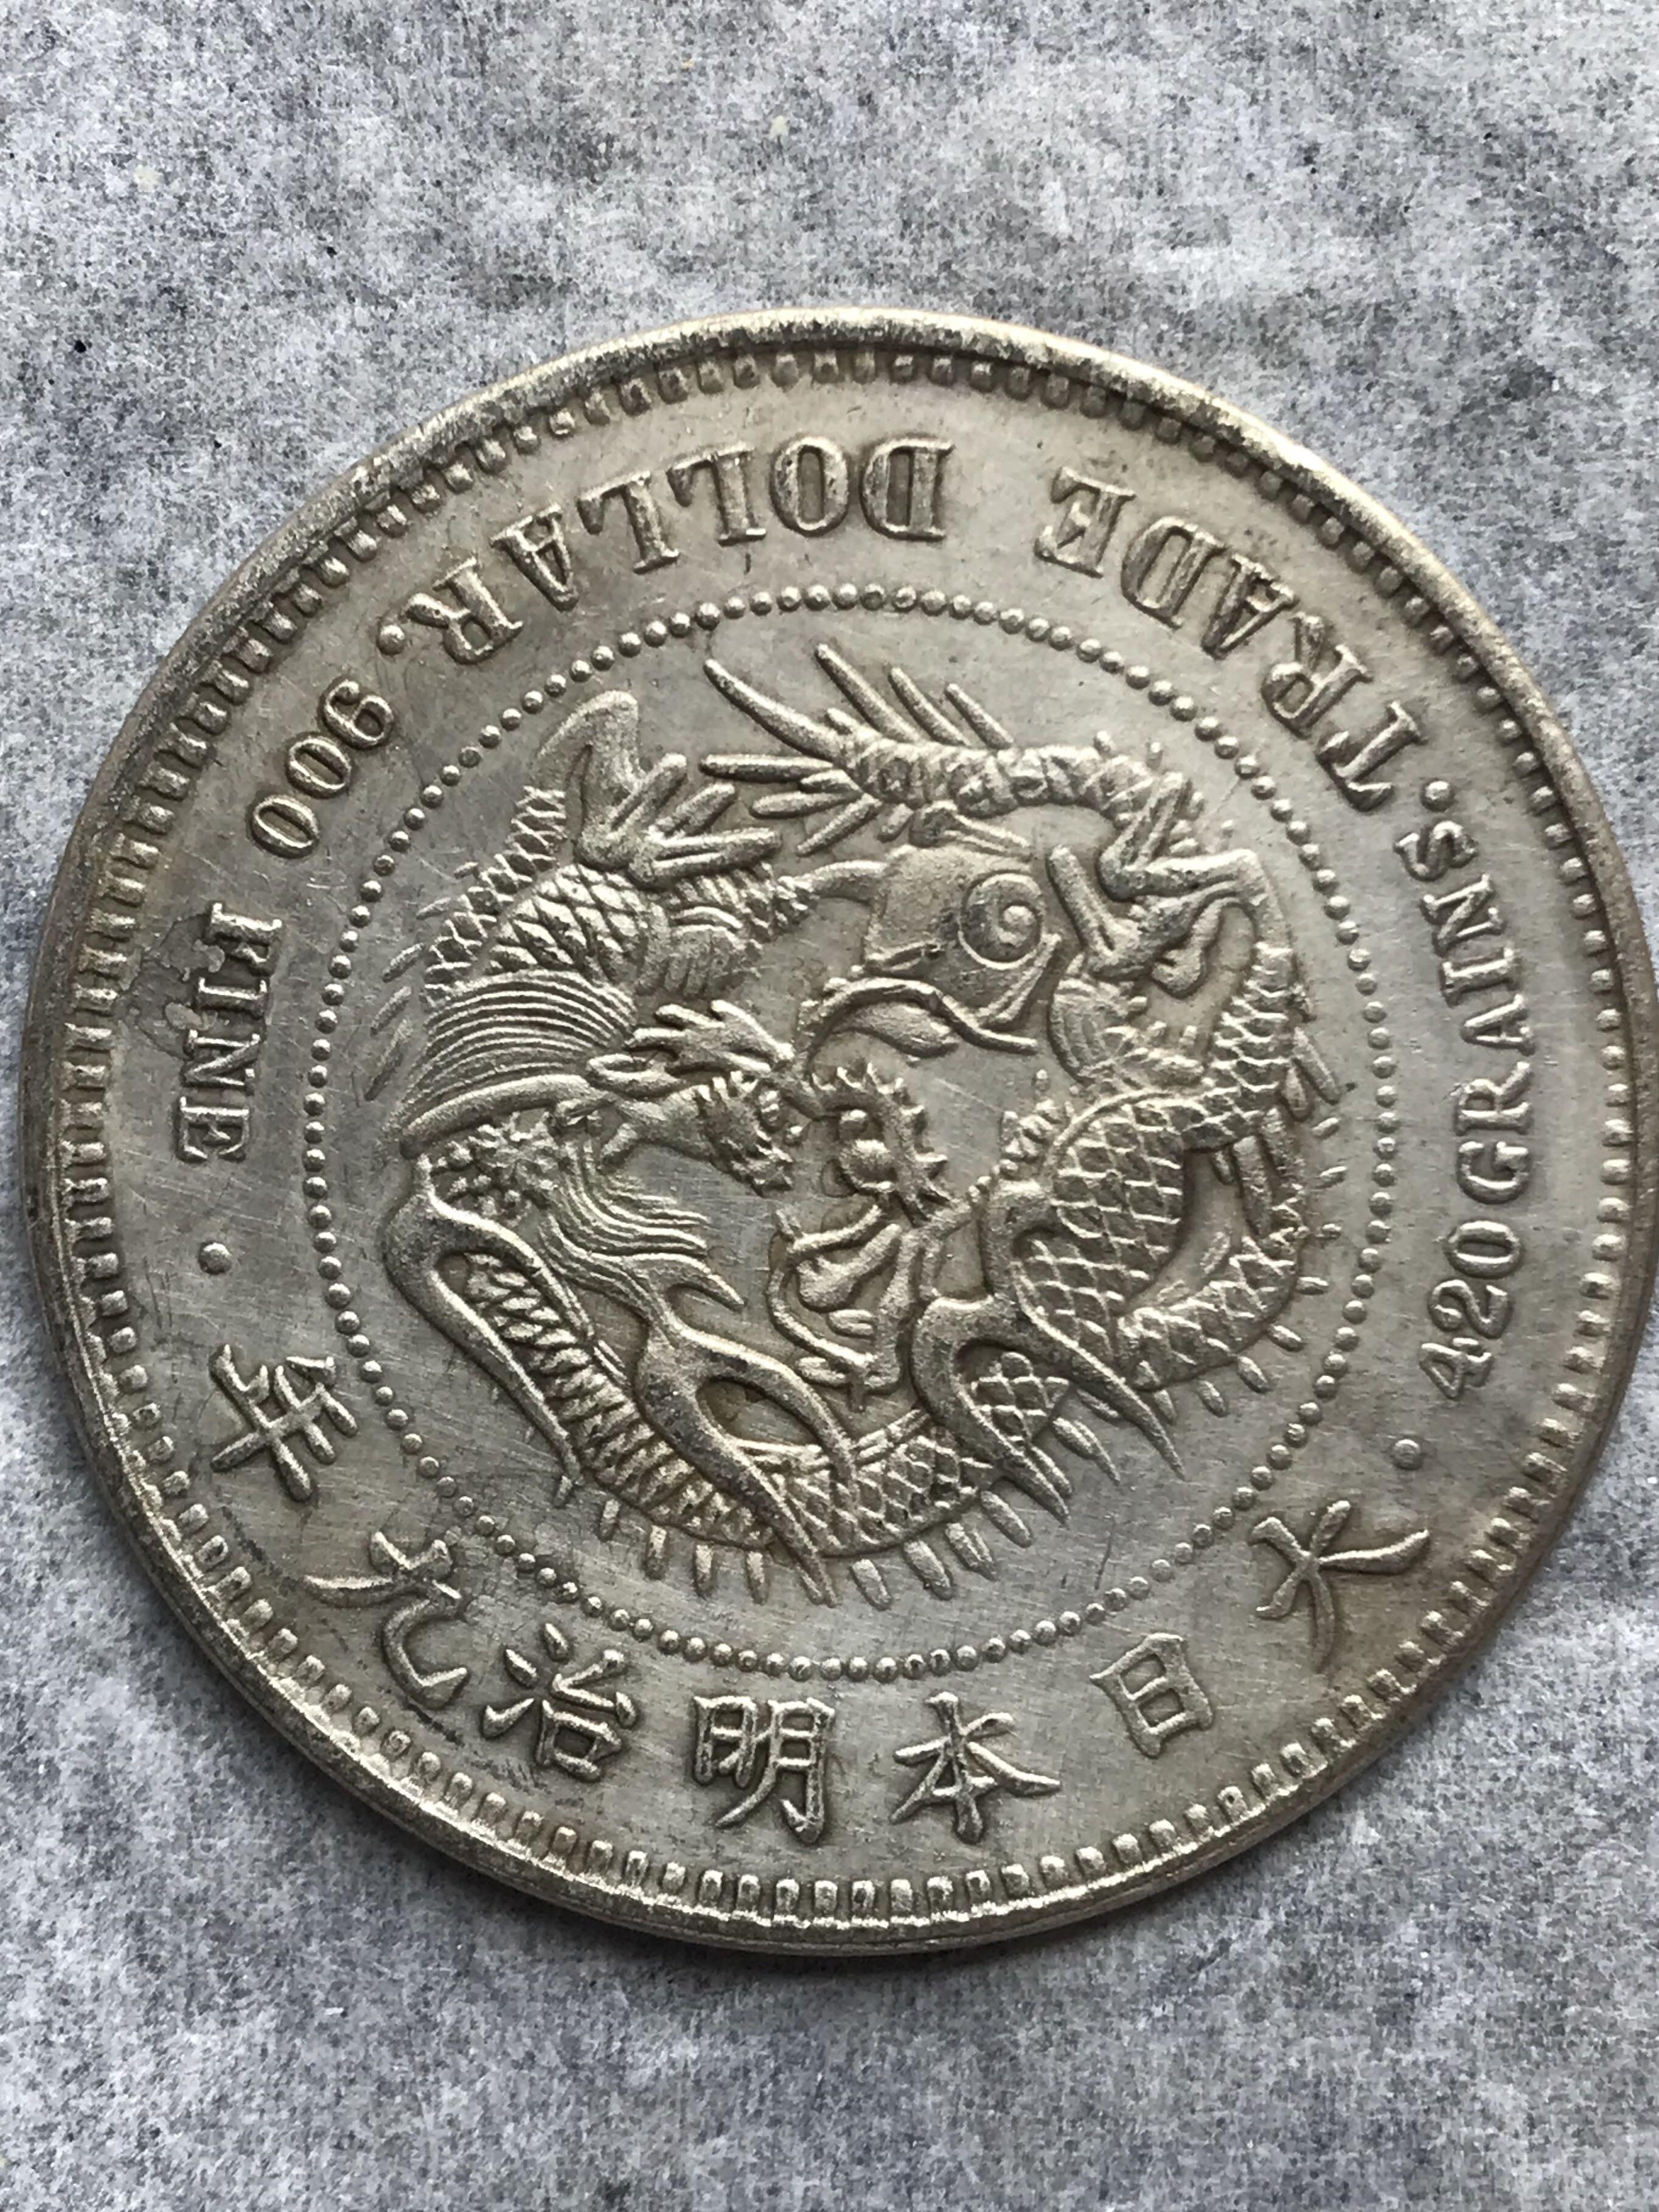 【銀質保証】E025大日本明治九年(1876年) 発行 貿易銀